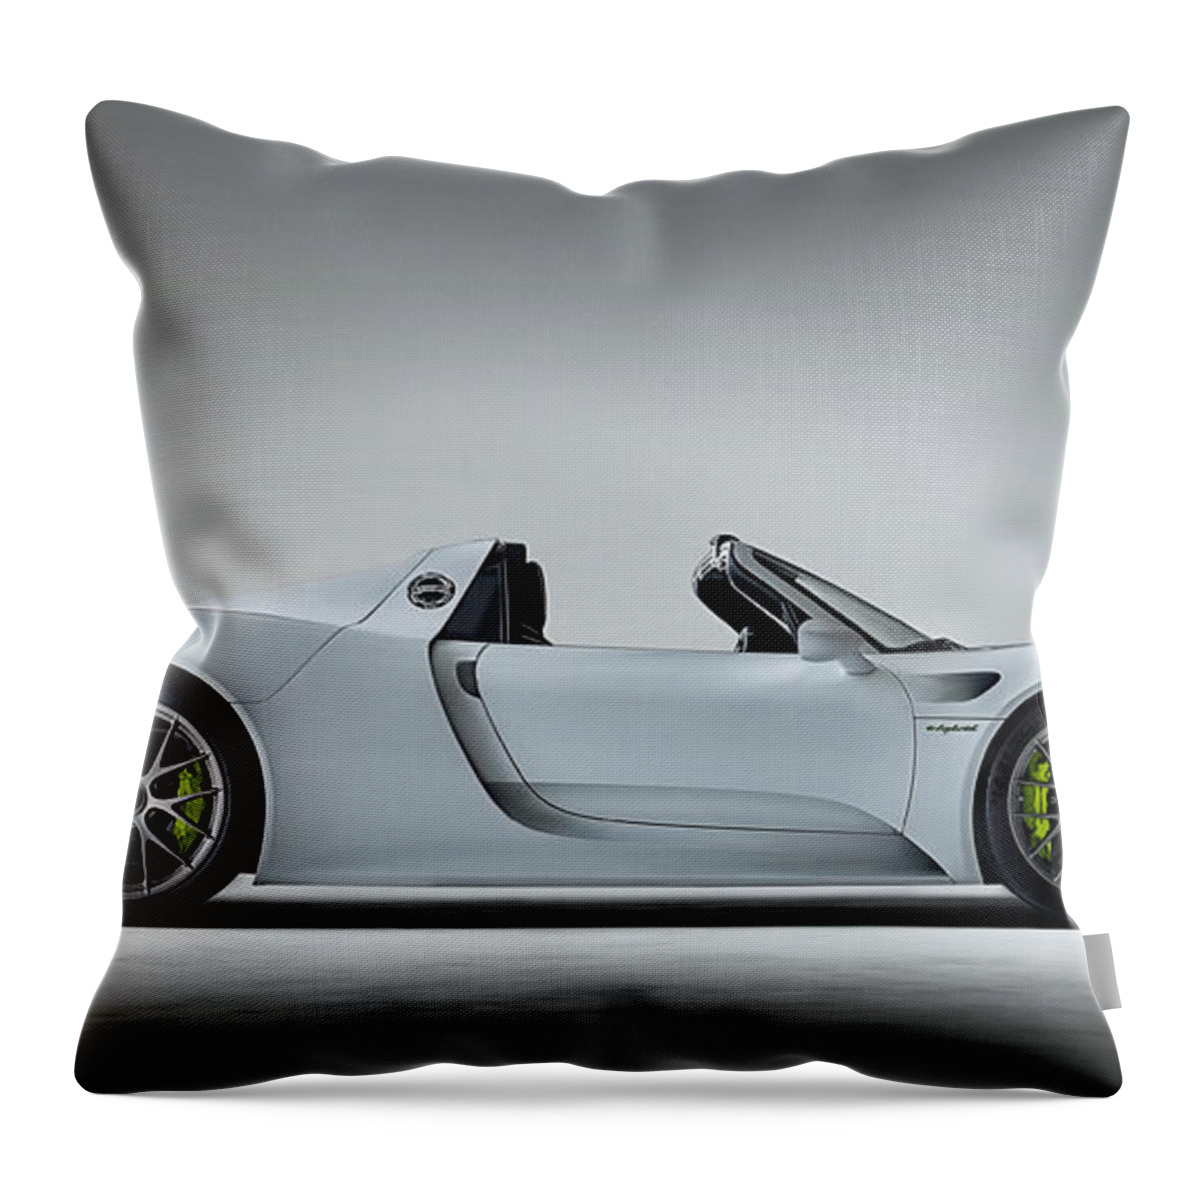 Porsche Throw Pillow featuring the digital art Porsche 918 by Douglas Pittman